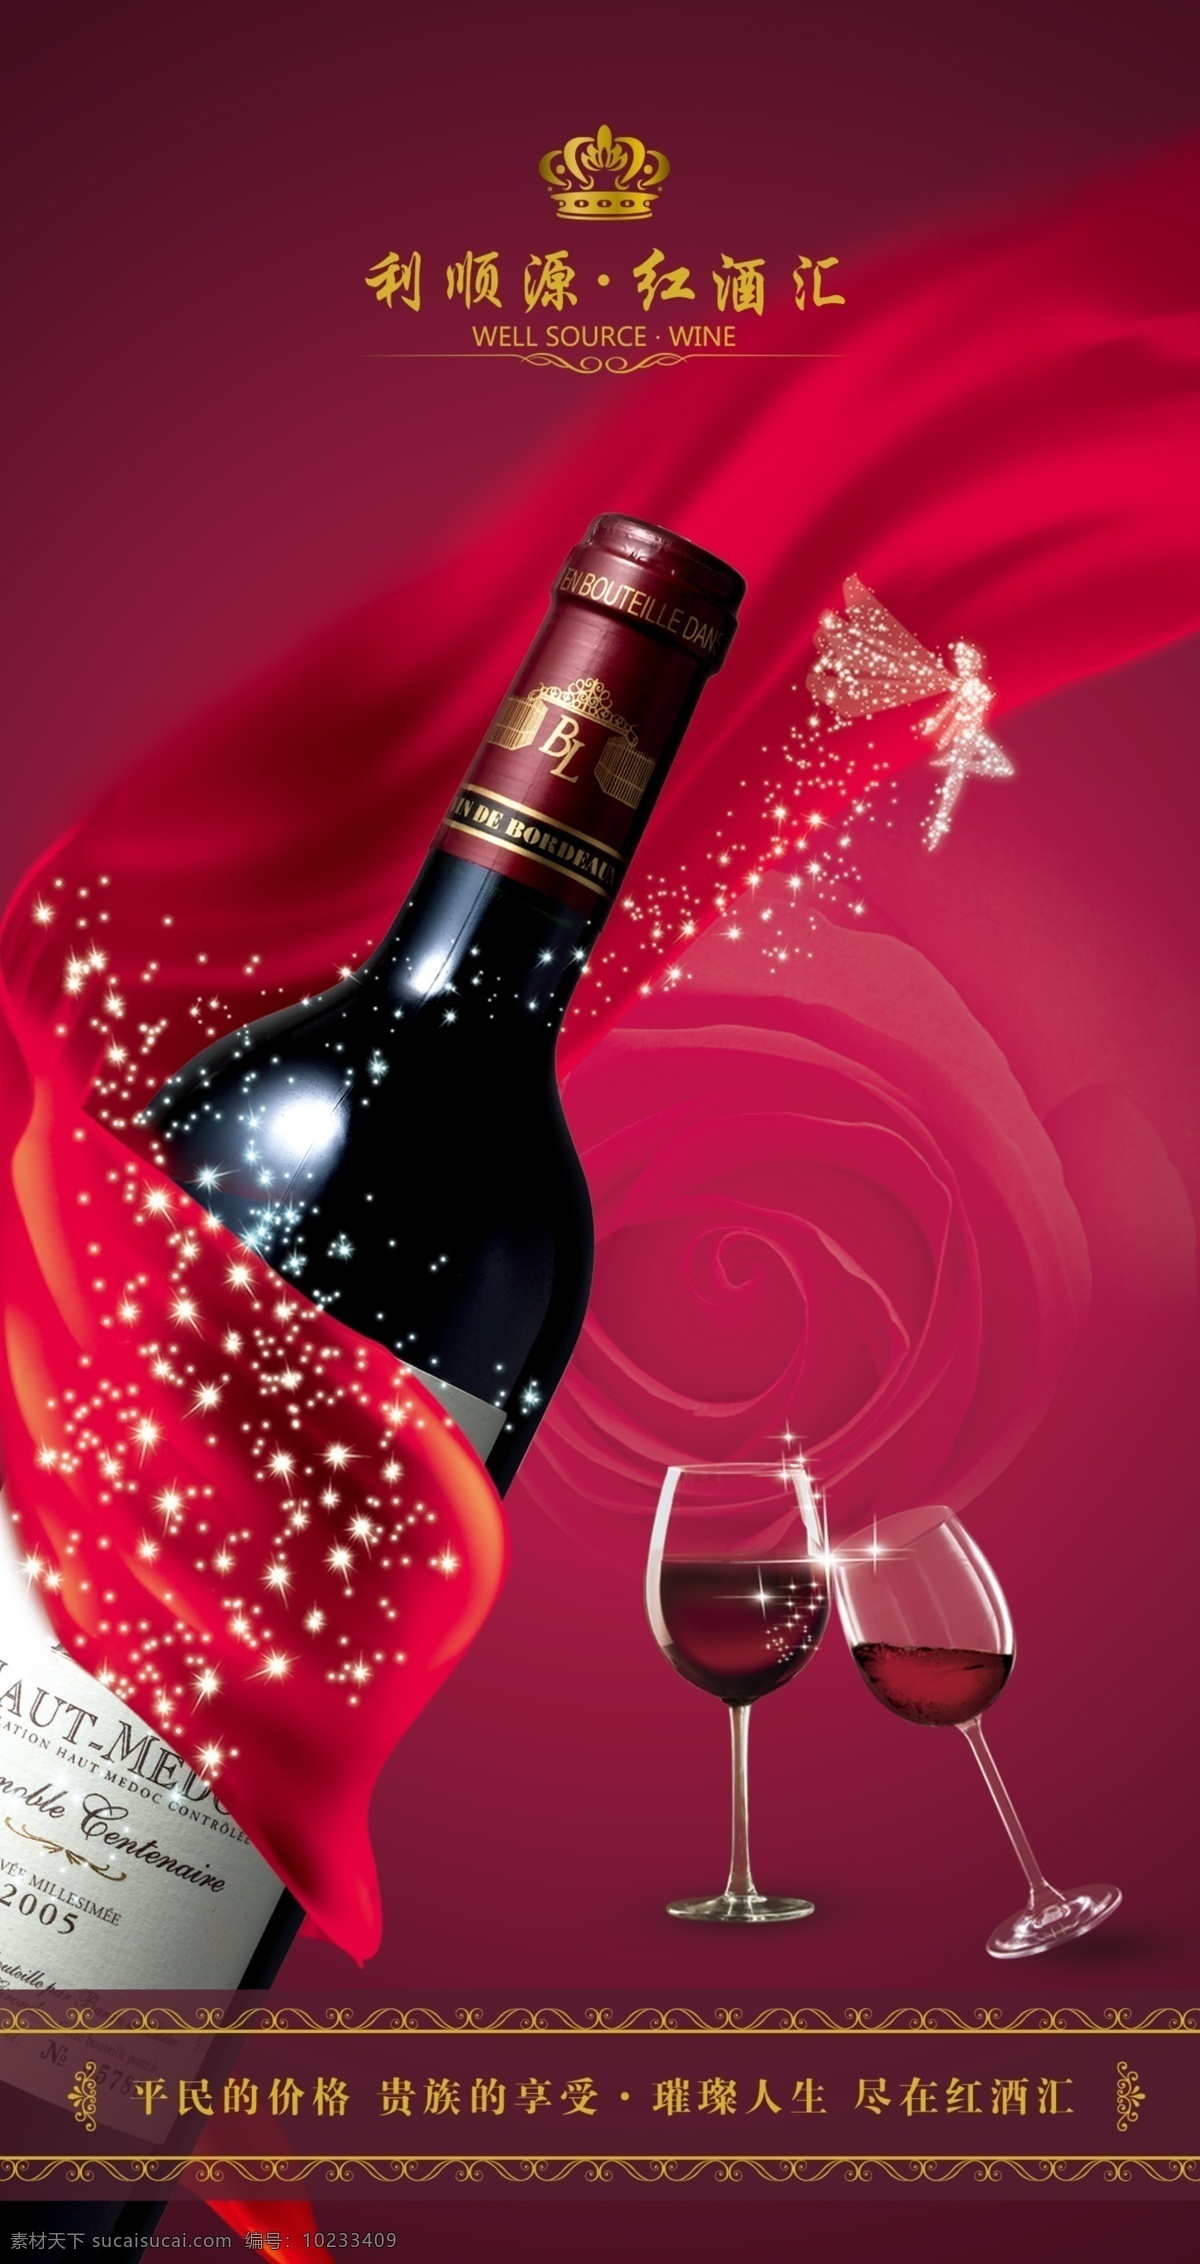 红酒宣传海报 红酒 广告 宣传 橱窗 酒